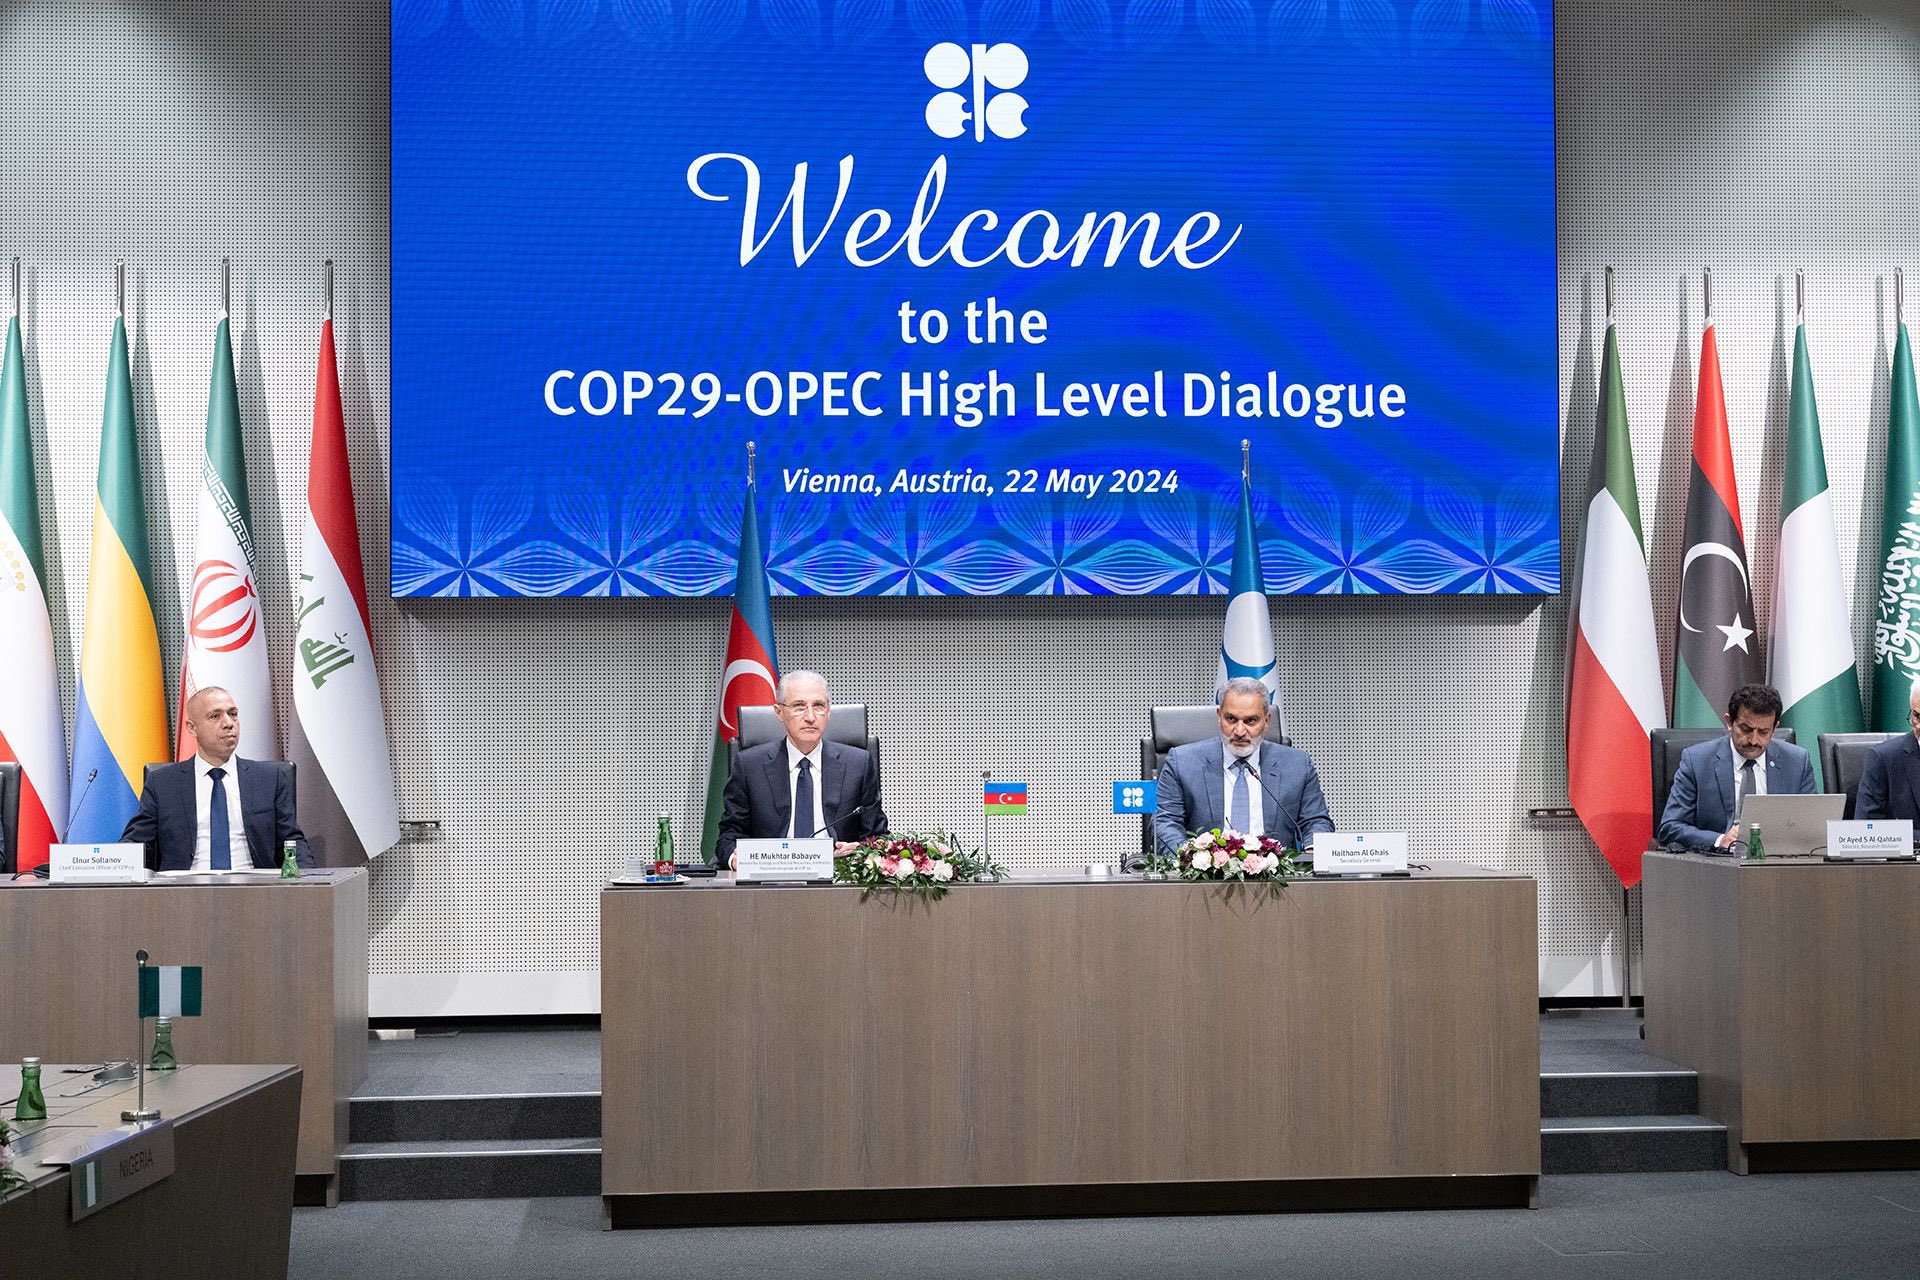 ОПЕК предлагает Азербайджану полную поддержку в проведении COP29 - генсек